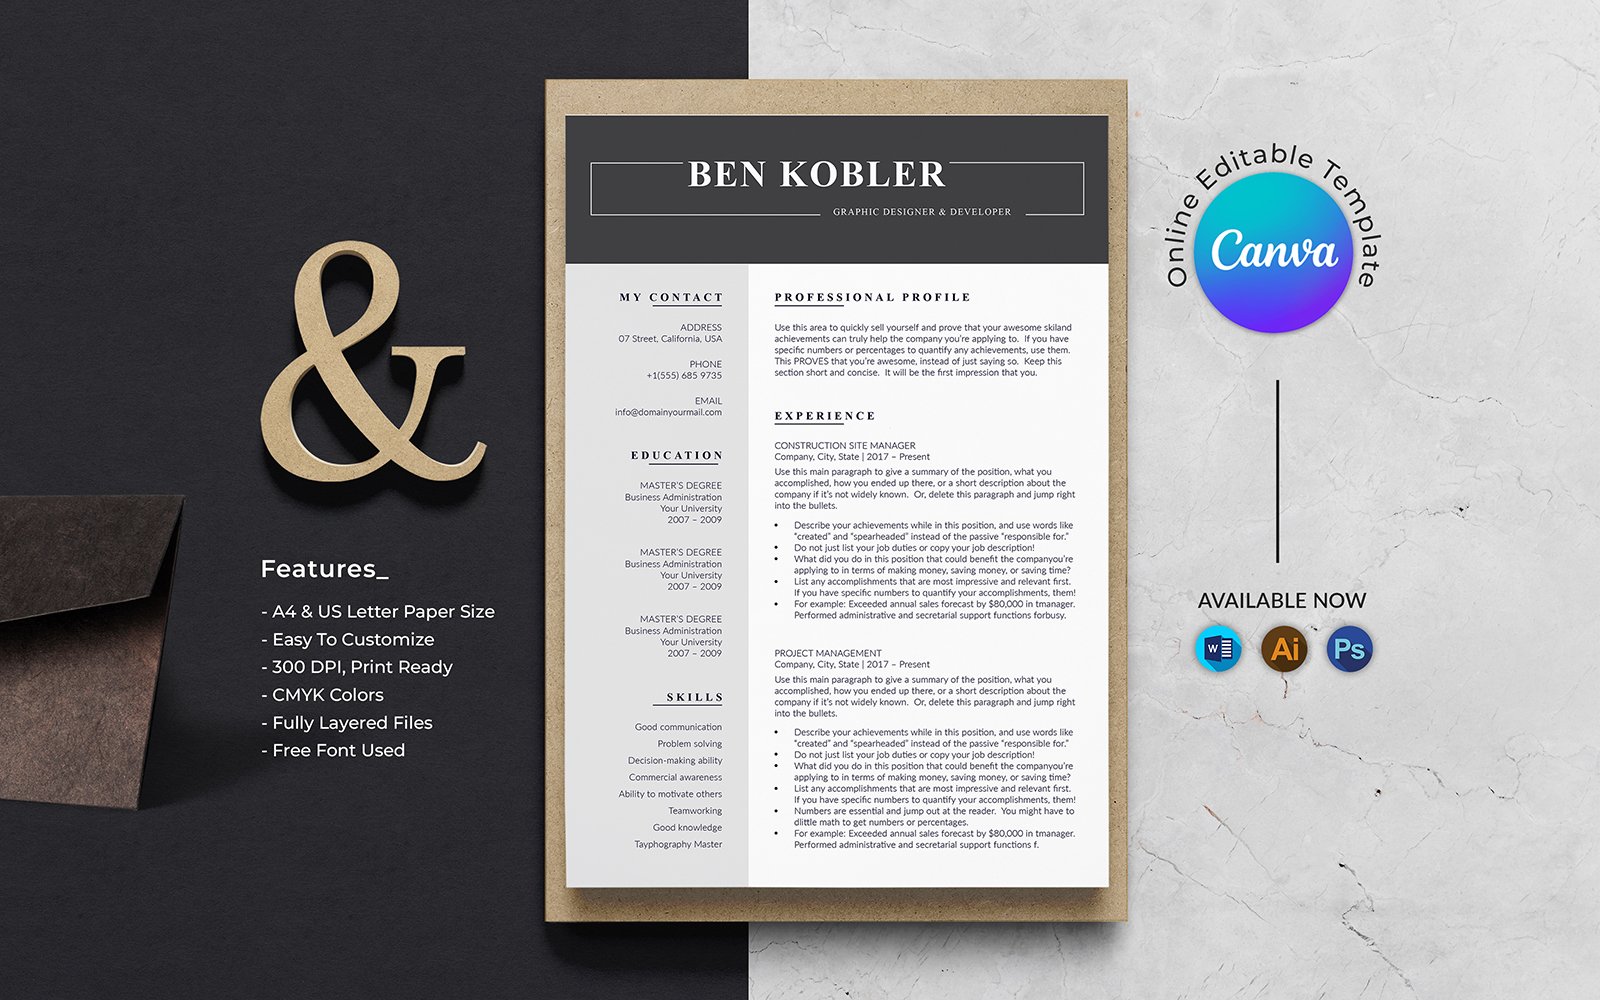 Ben Kobler Graphic Designer Resume Template